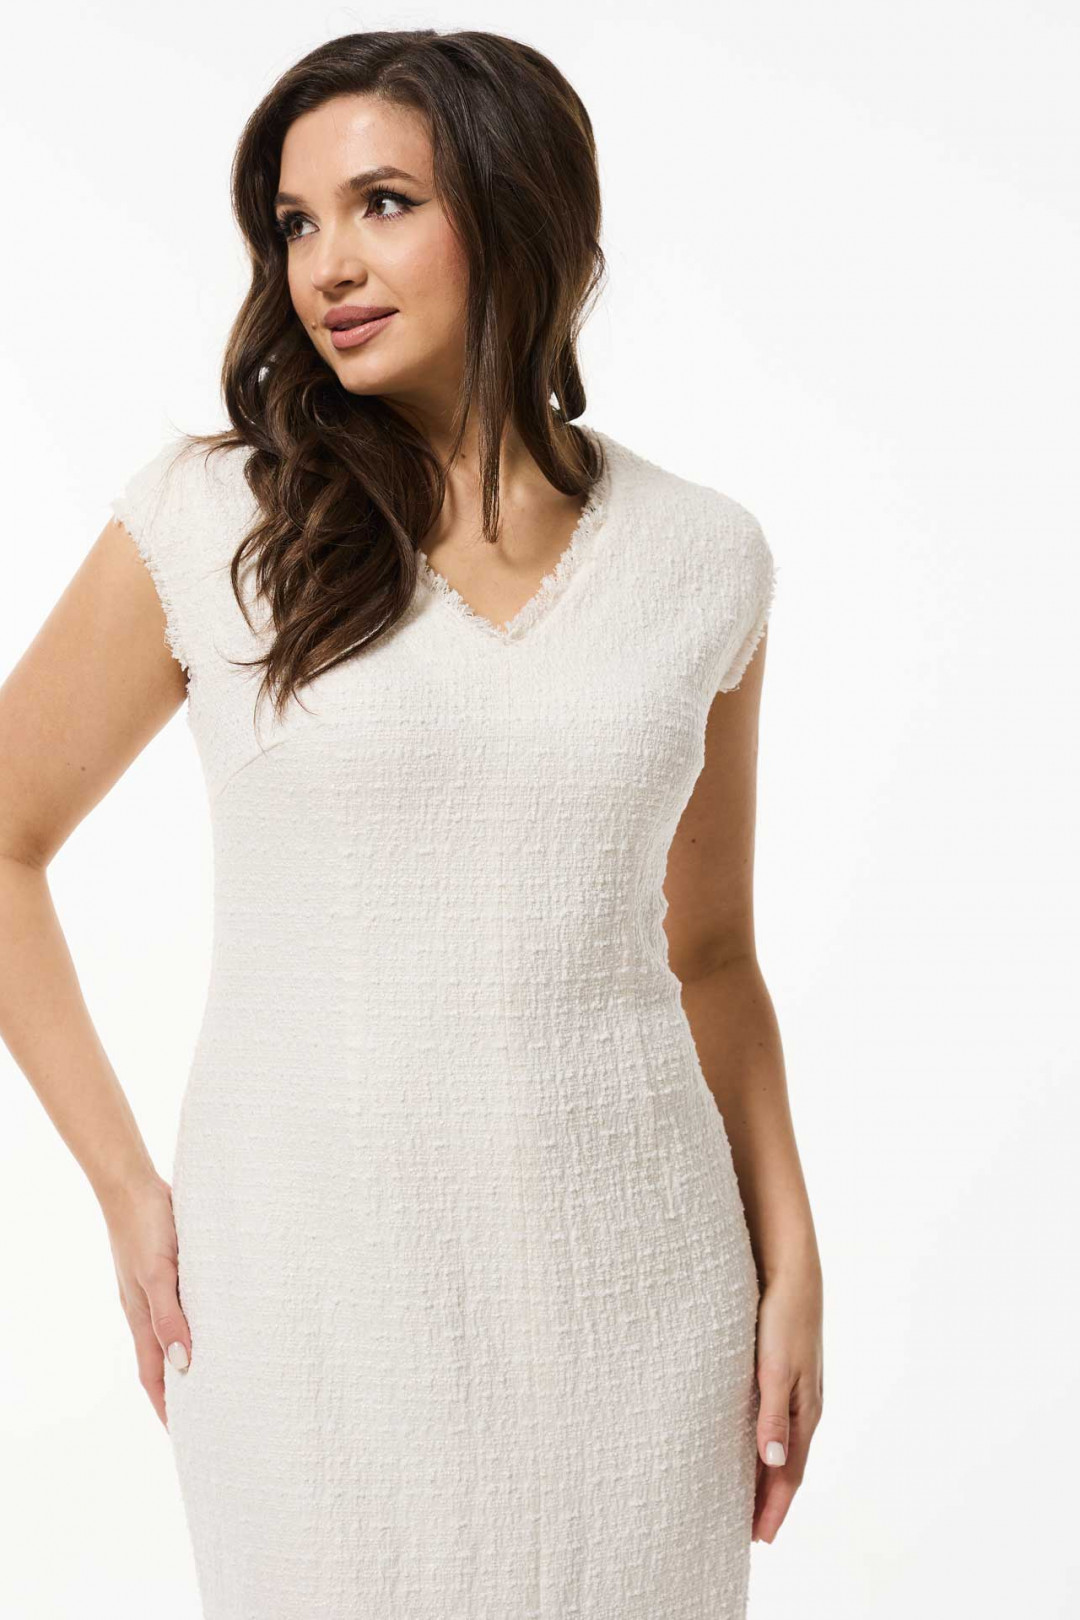 Платье MisLana 1073 белый с кремовым